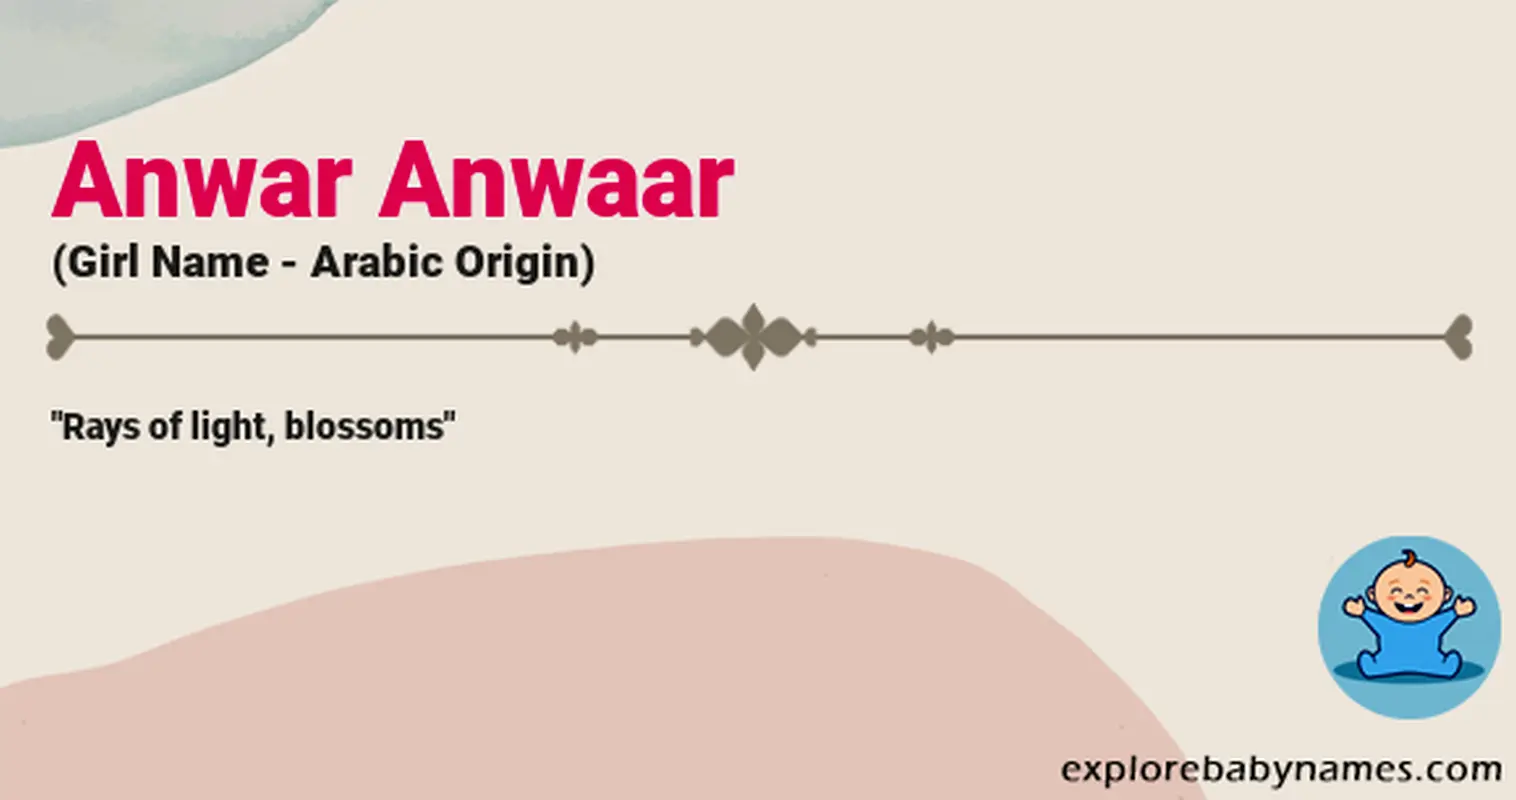 Meaning of Anwar Anwaar